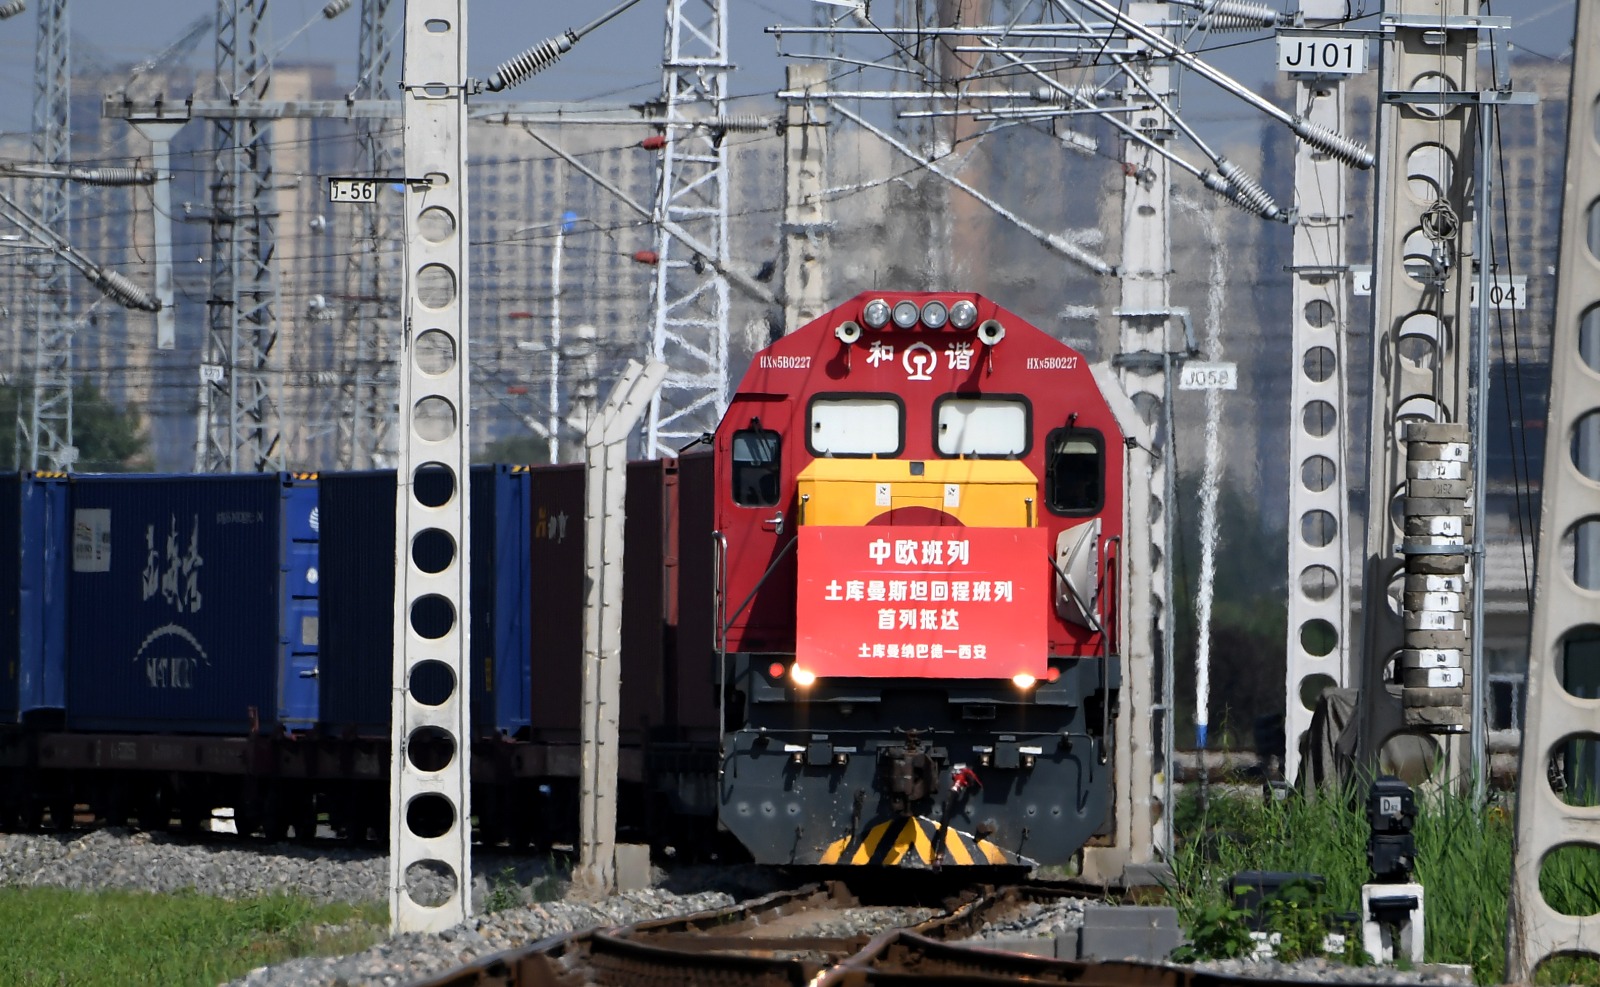  قطار شحن صيني-أوروبي مُحمل بمواد خام لعرق السوس، عشب طبي صيني تقليدي، المُغادر من تركمانستان، يصل إلى ميناء شيآن الدولي في مدينة شيآن، حاضرة مقاطعة شنشي شمال غربي الصين يوم 31 أغسطس 2022. (شينخوا)